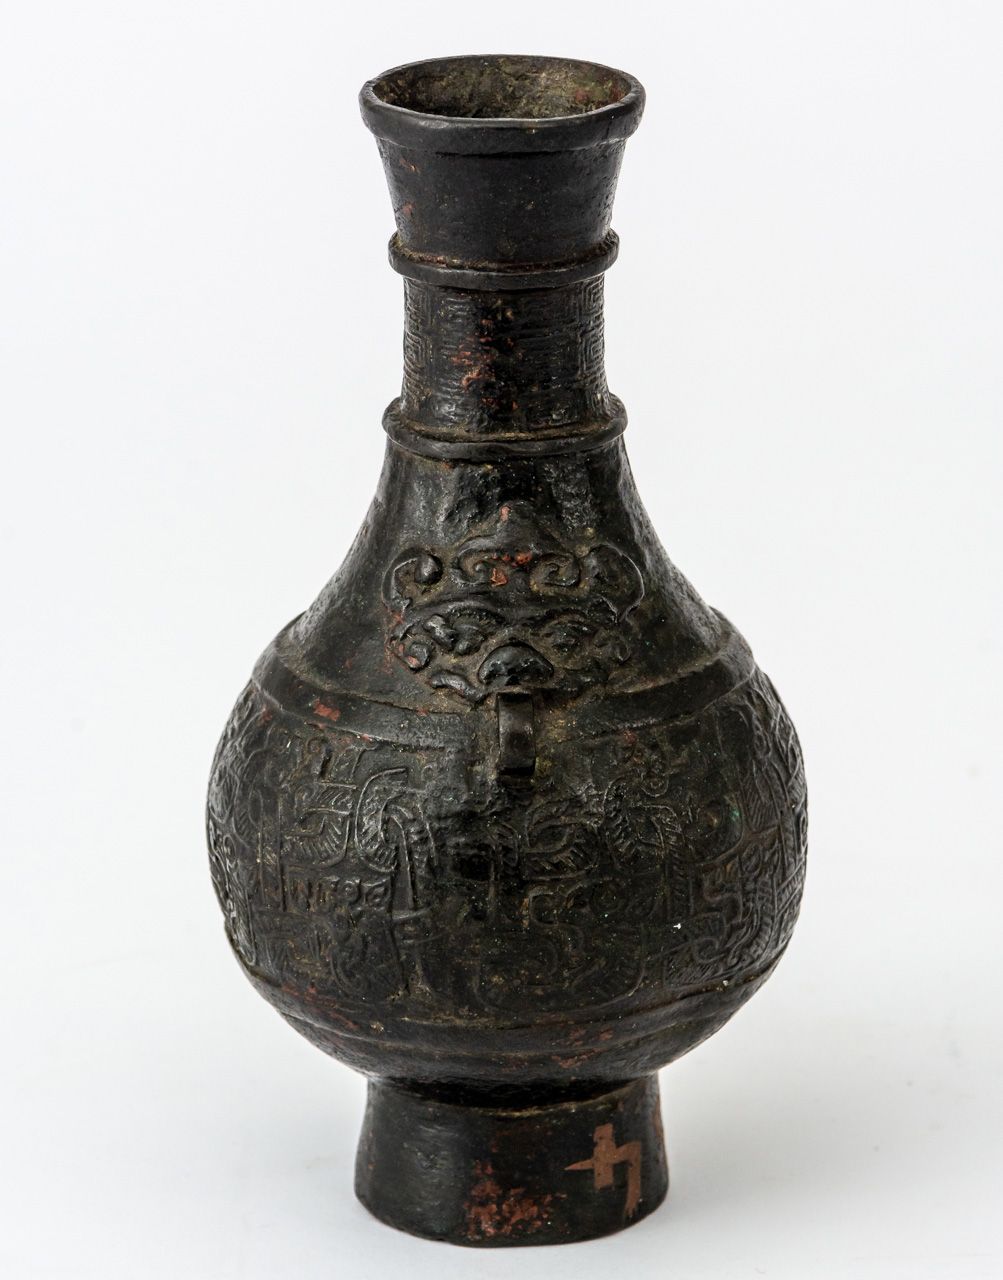 BRONZENE VASE Chine, fond fermé avec de la cire, avant 1800

14,5 cm de haut